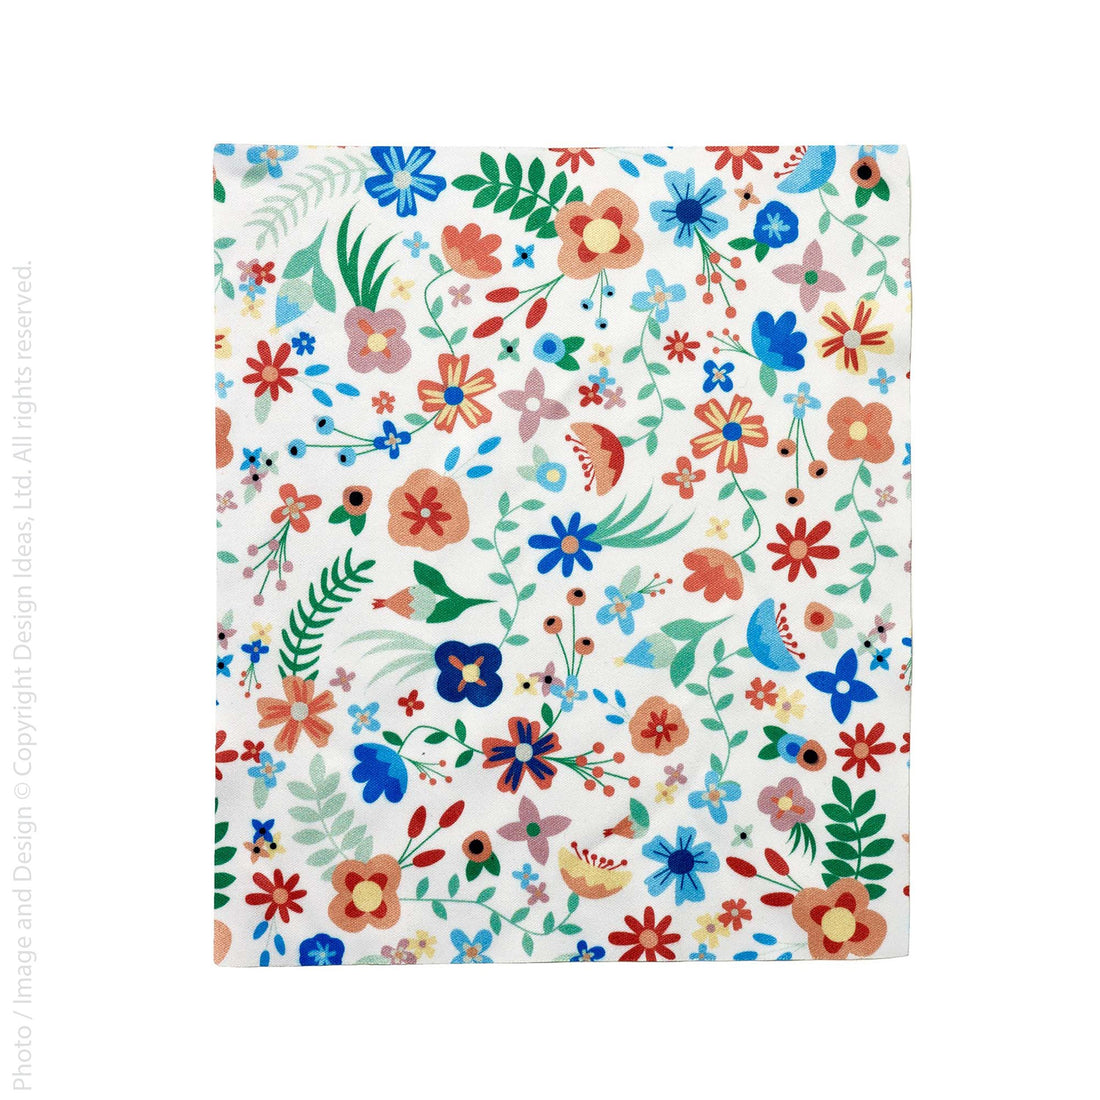 Focus™ cloth (floral)